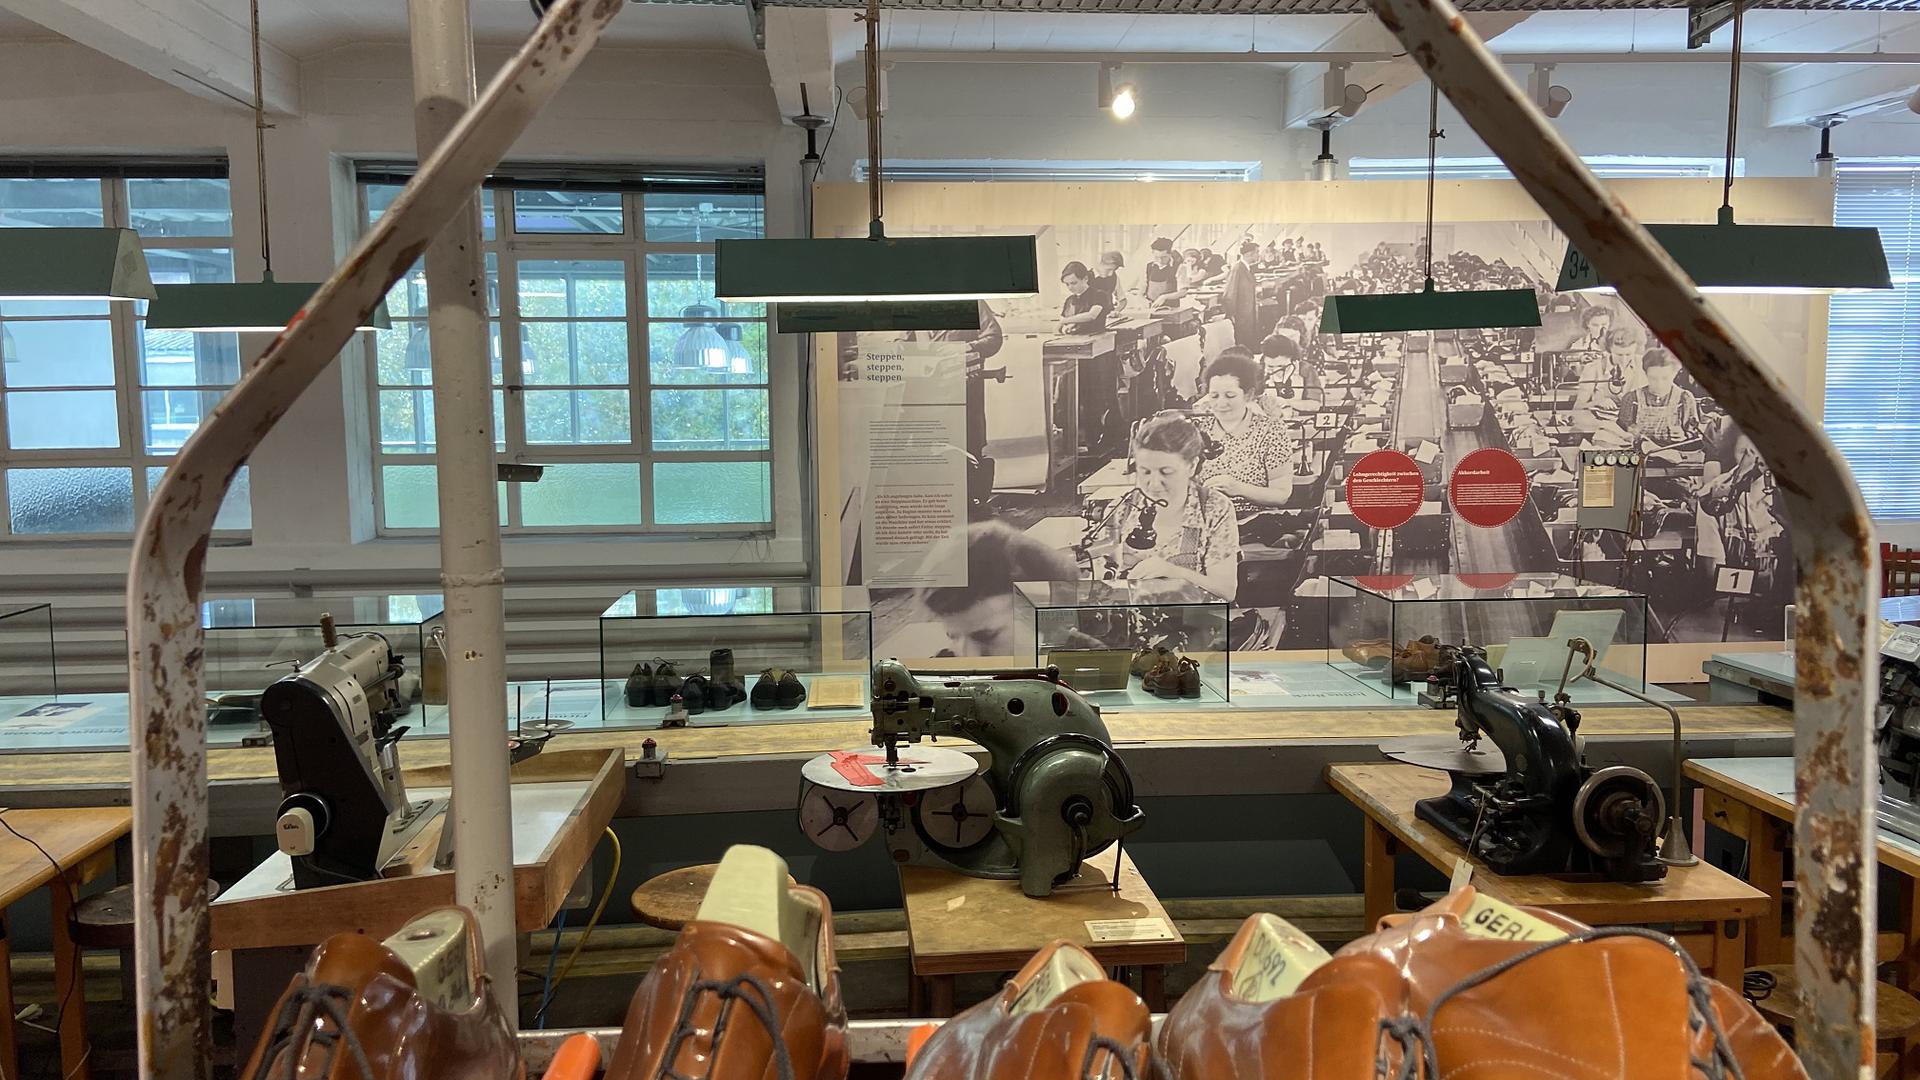 Nachgebaute Näherei einer Schuhfabrik. Im Hintergrund hängt ein große historische Aufnahme an der Wand, die eine Fabrikhalle mit zahlreichen Arbeiterinnen an Nähmaschinen zeigt.